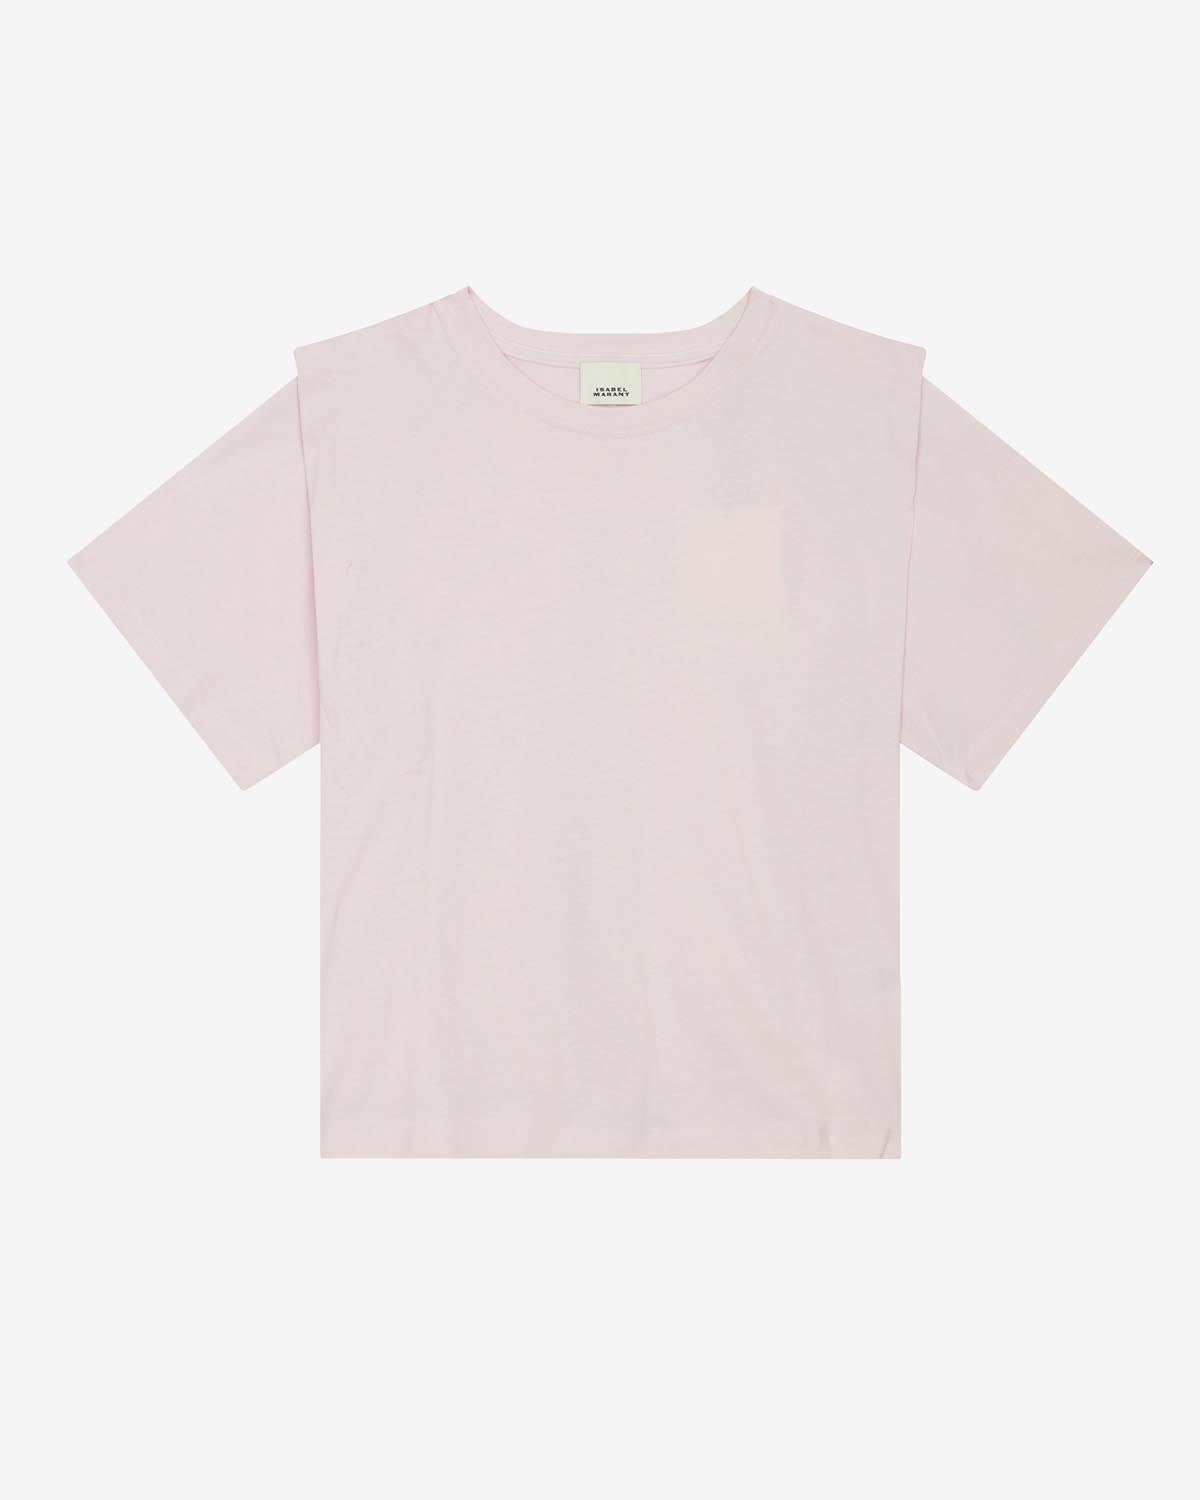 Zelitos tee shirt Woman Light pink 7